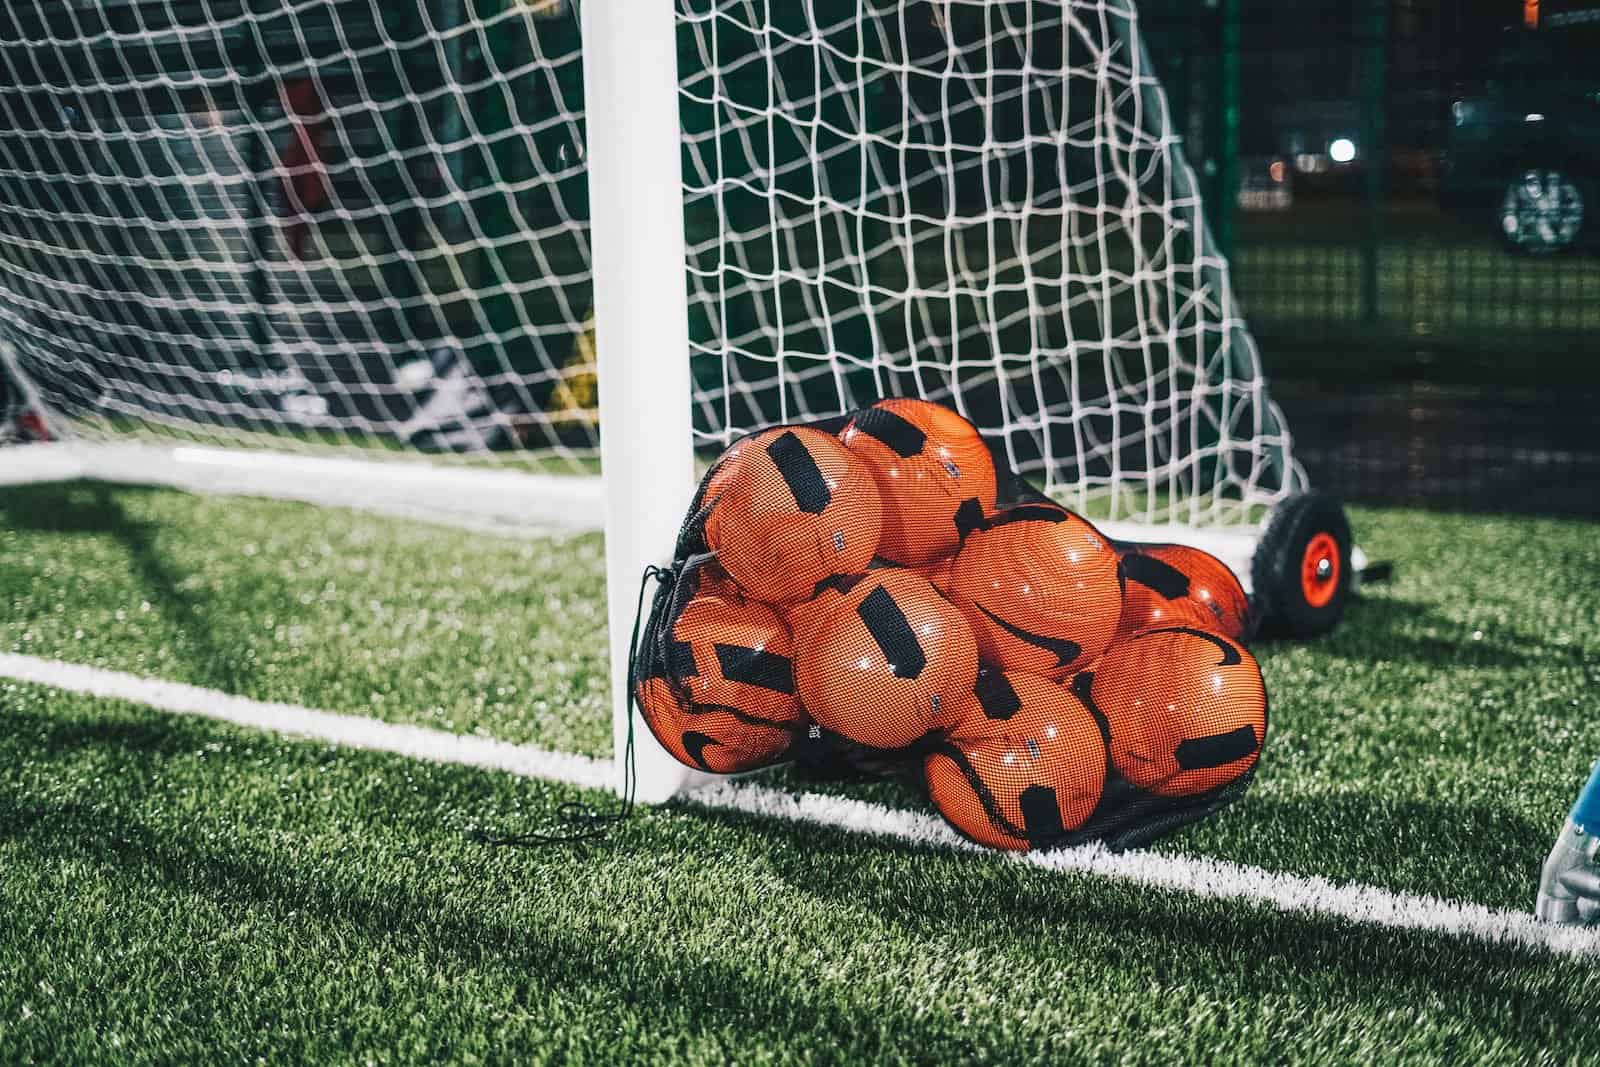 Quels sont les équipements indispensables pour jouer au football ?